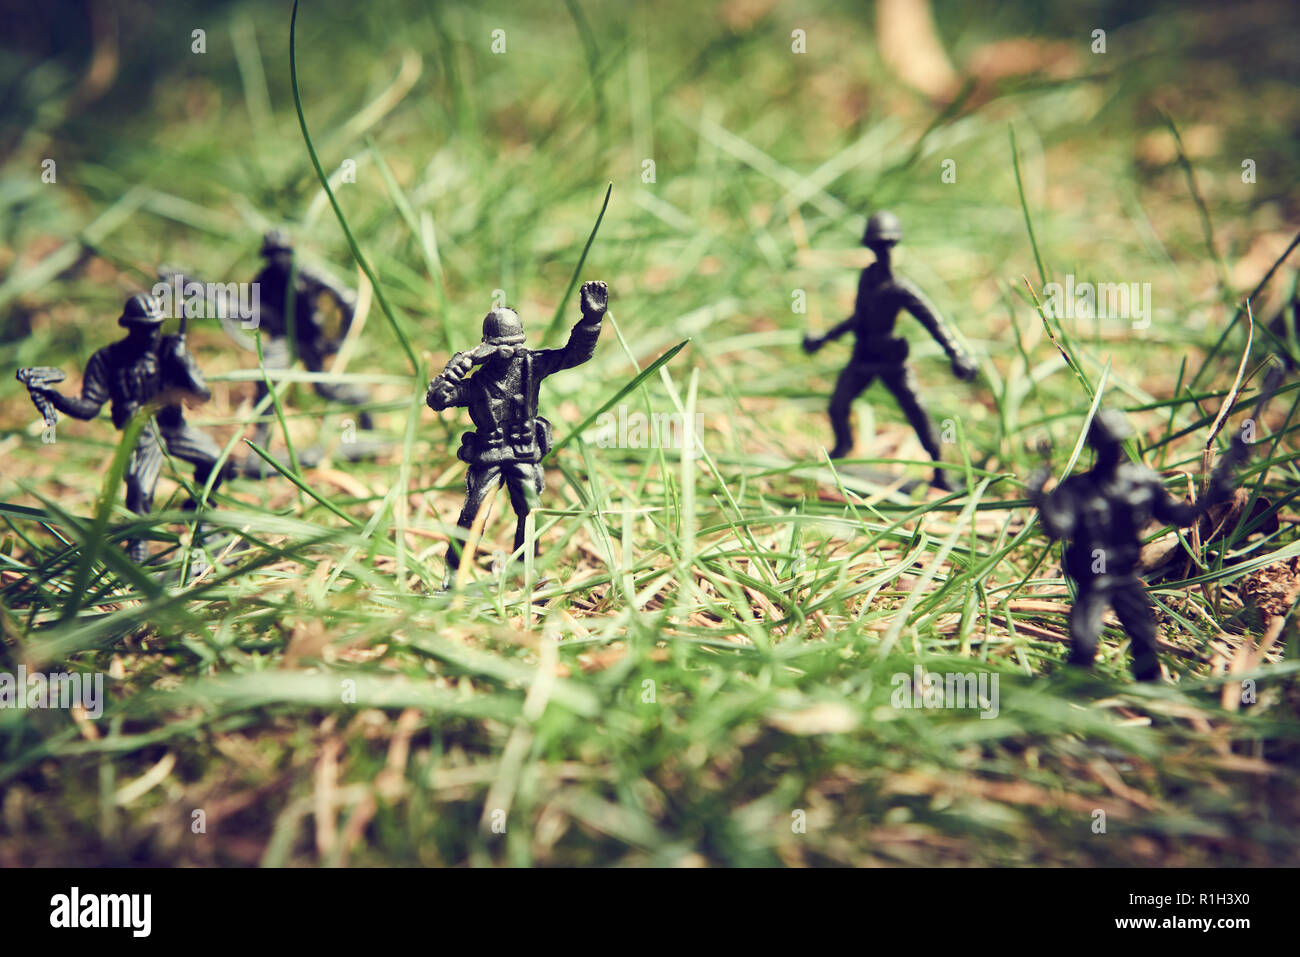 Soldaten im Dschungel zu kämpfen. Konzept Bild von Spielzeug aus Plastik Soldaten in echtem Rasen. Selektive konzentrieren. Stockfoto